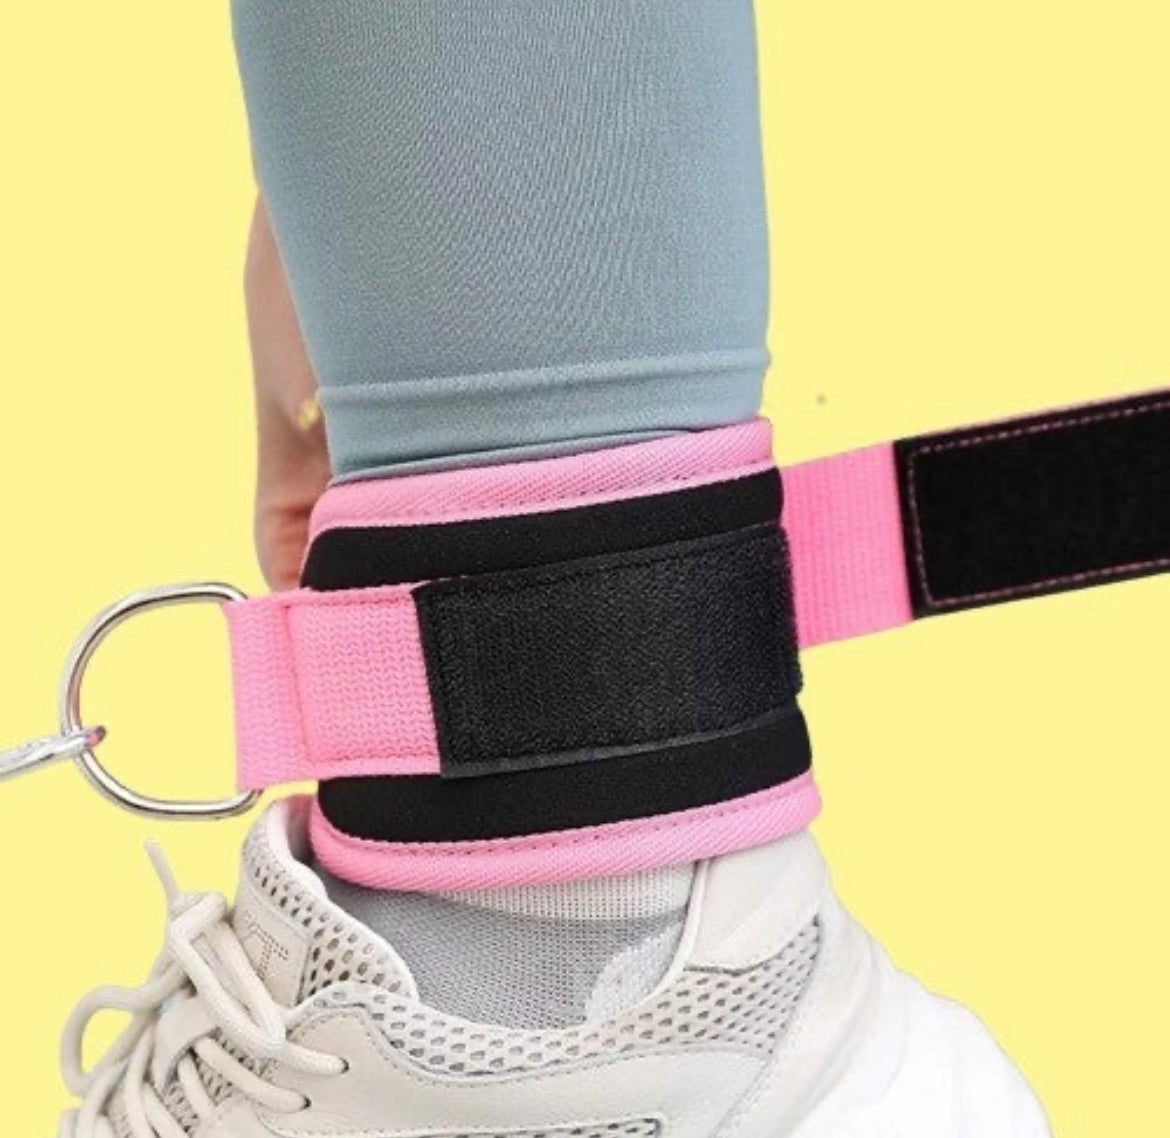 Roze ankle straps met klittenband. Verkrijgbaar in 1 of 2 stuks. Voor het trainen van je bilspier. 